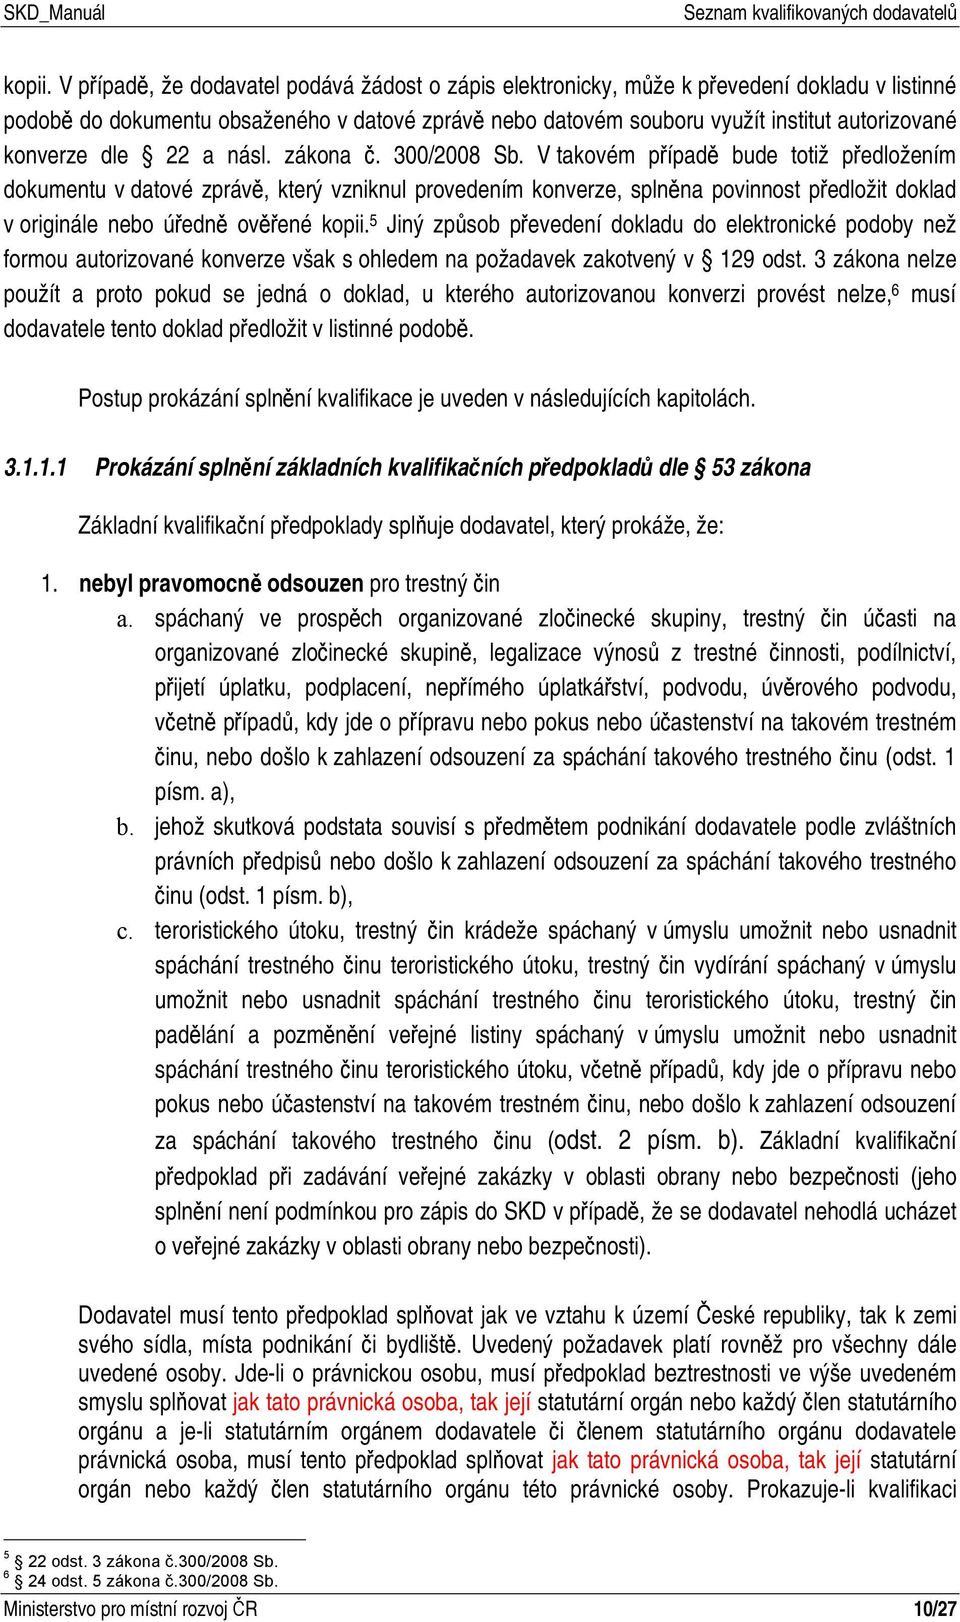 konverze dle 22 a násl. zákona č. 300/2008 Sb.